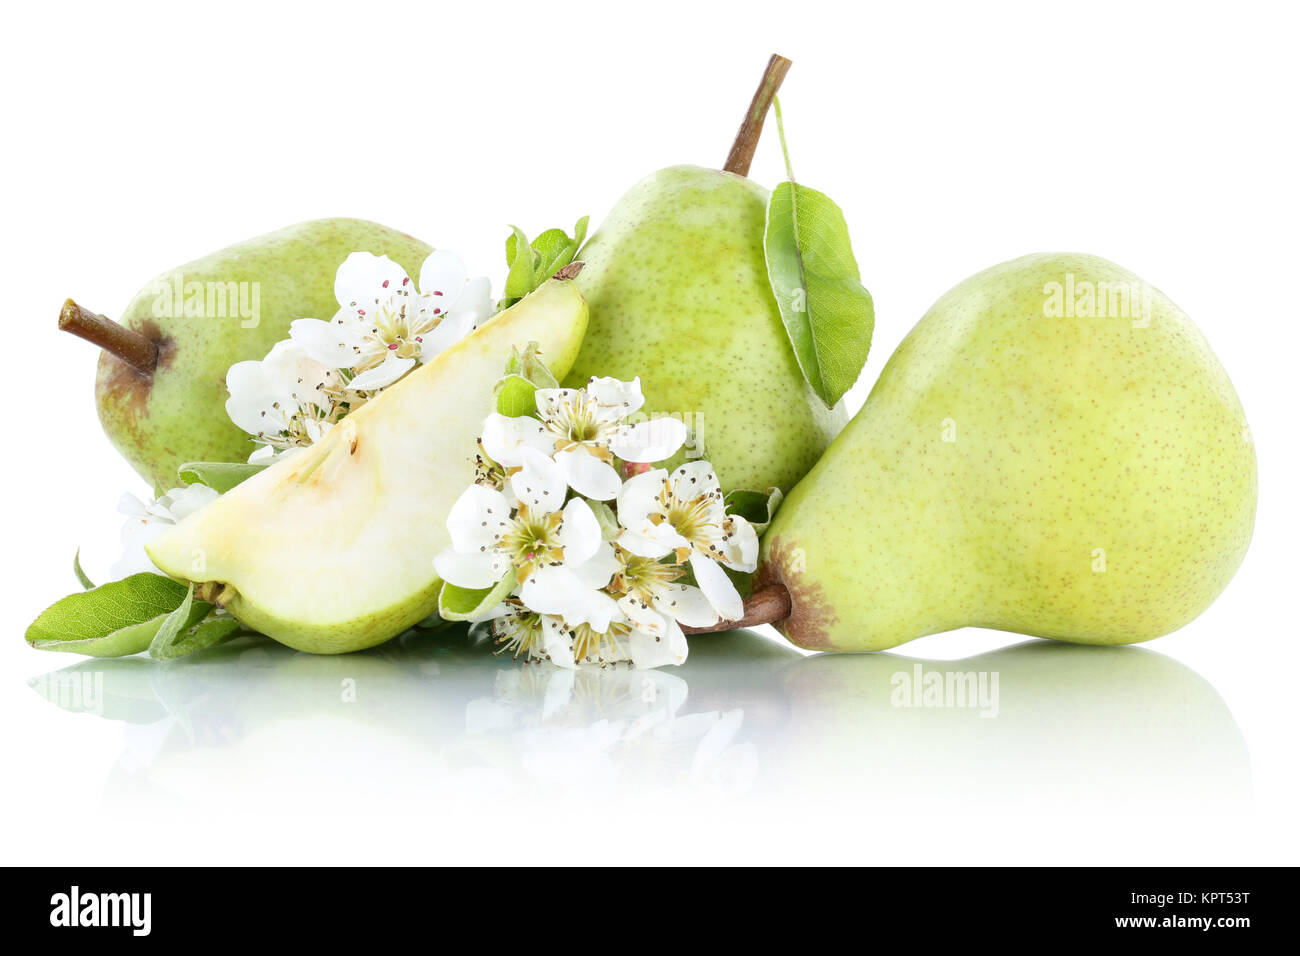 Birnen Birne grün Früchte Obst Freisteller freigestellt isoliert vor einem weissen Hintergrund Stock Photo